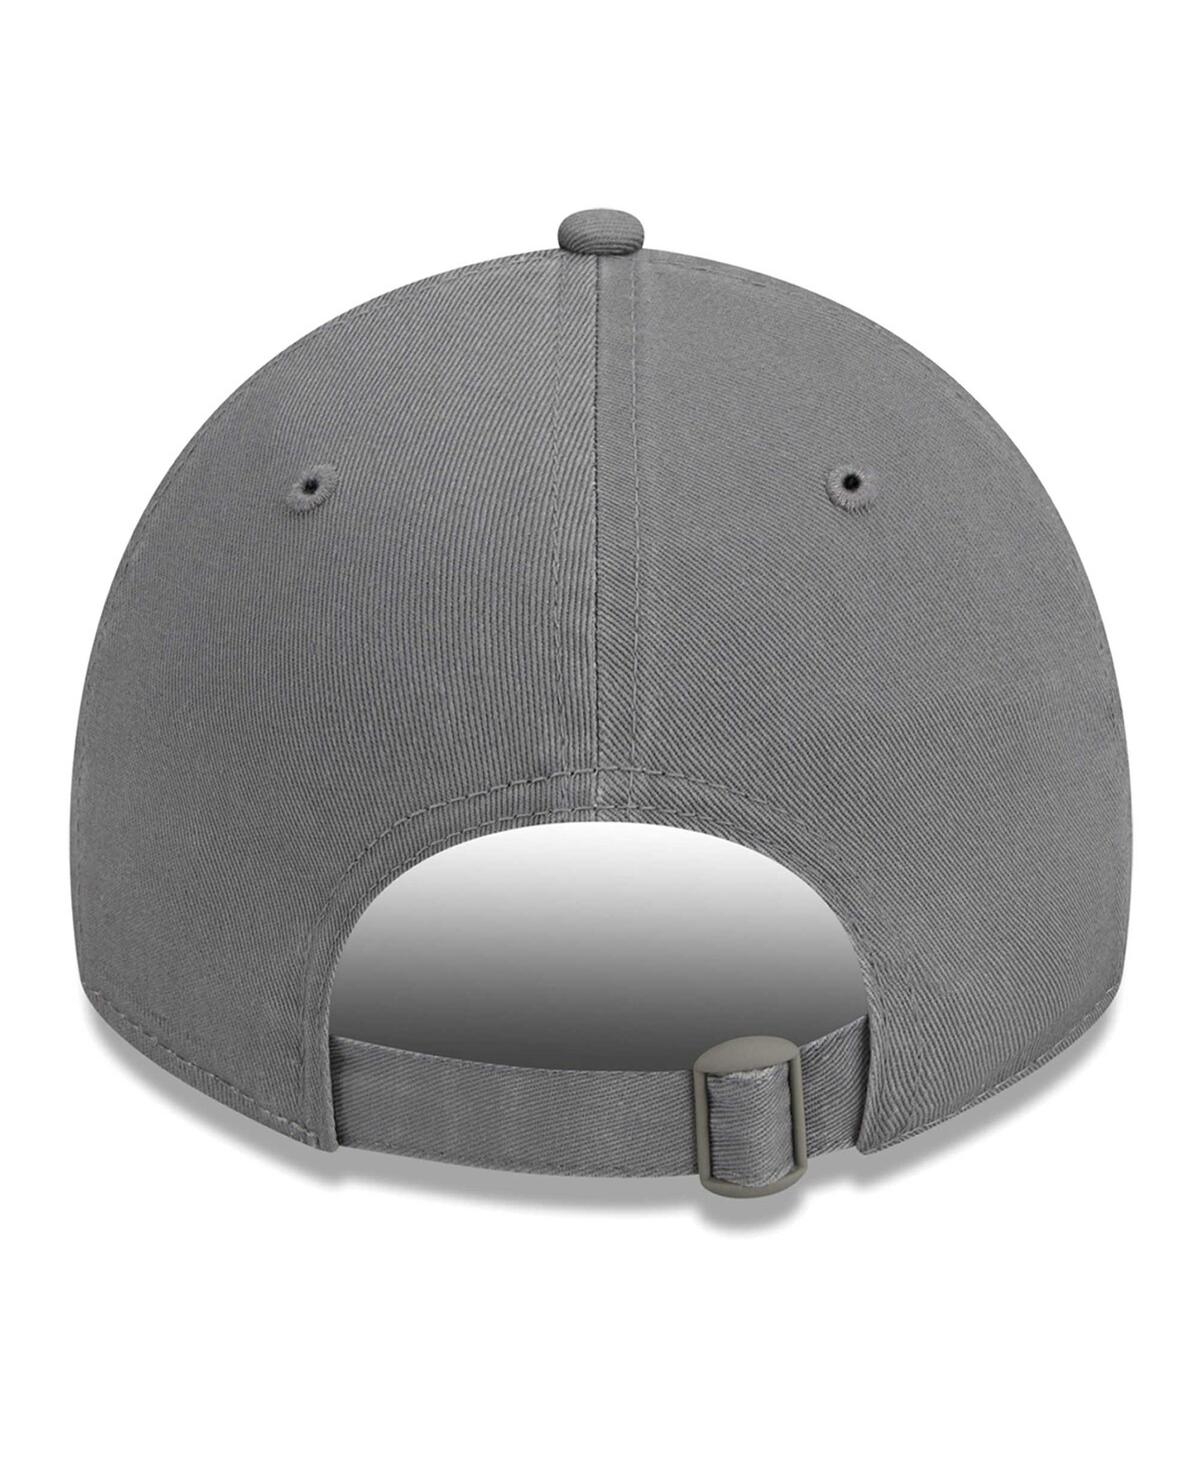 Shop New Era Women's  Gray New York Giants Color Pack 9twenty Adjustable Hat